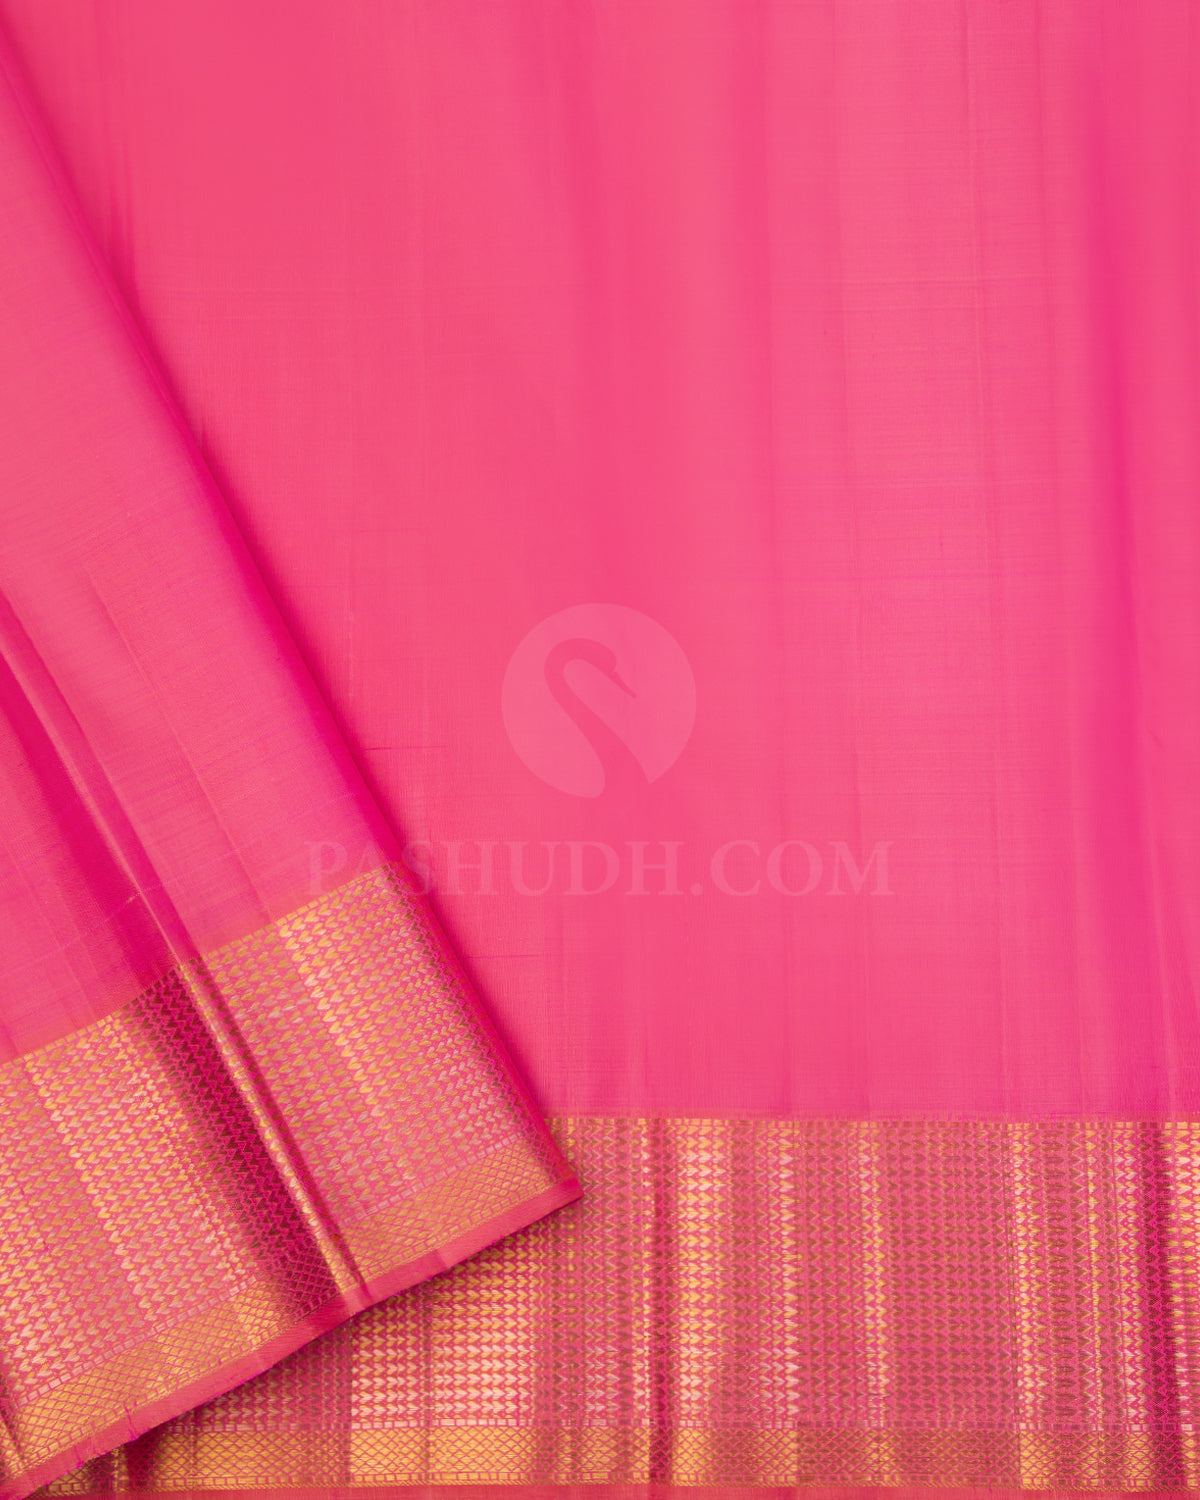 Mint Green and Flamingo Pink Kanjivaram Silk Saree - S608 - view 4